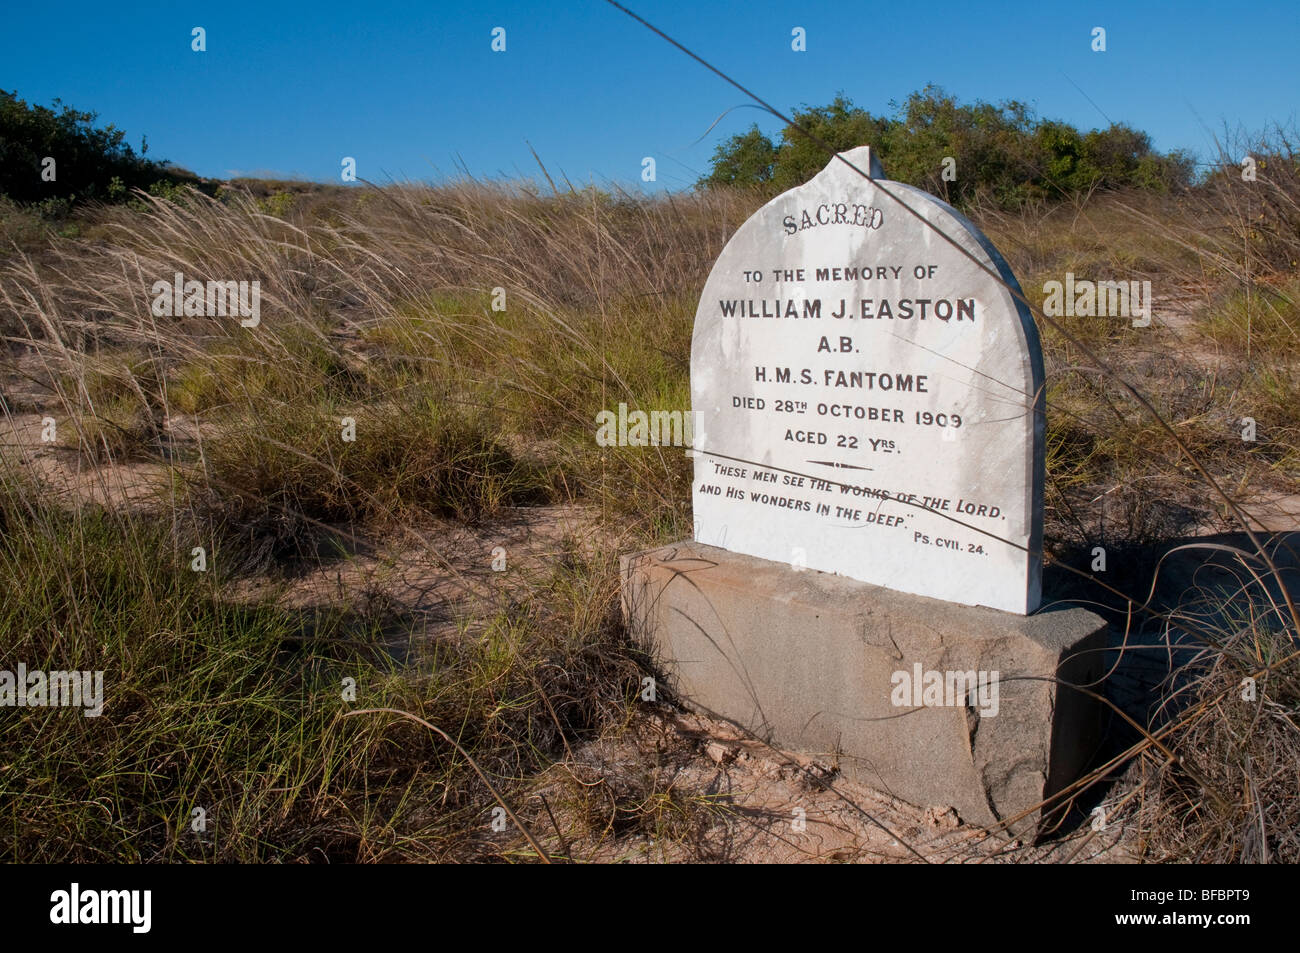 Das einsame Grab eines jungen Seemanns der Royal Navy, William Easton von der HMS Fantome, der 1909 starb, an der Westaustralischen Küste nahe Broome Stockfoto